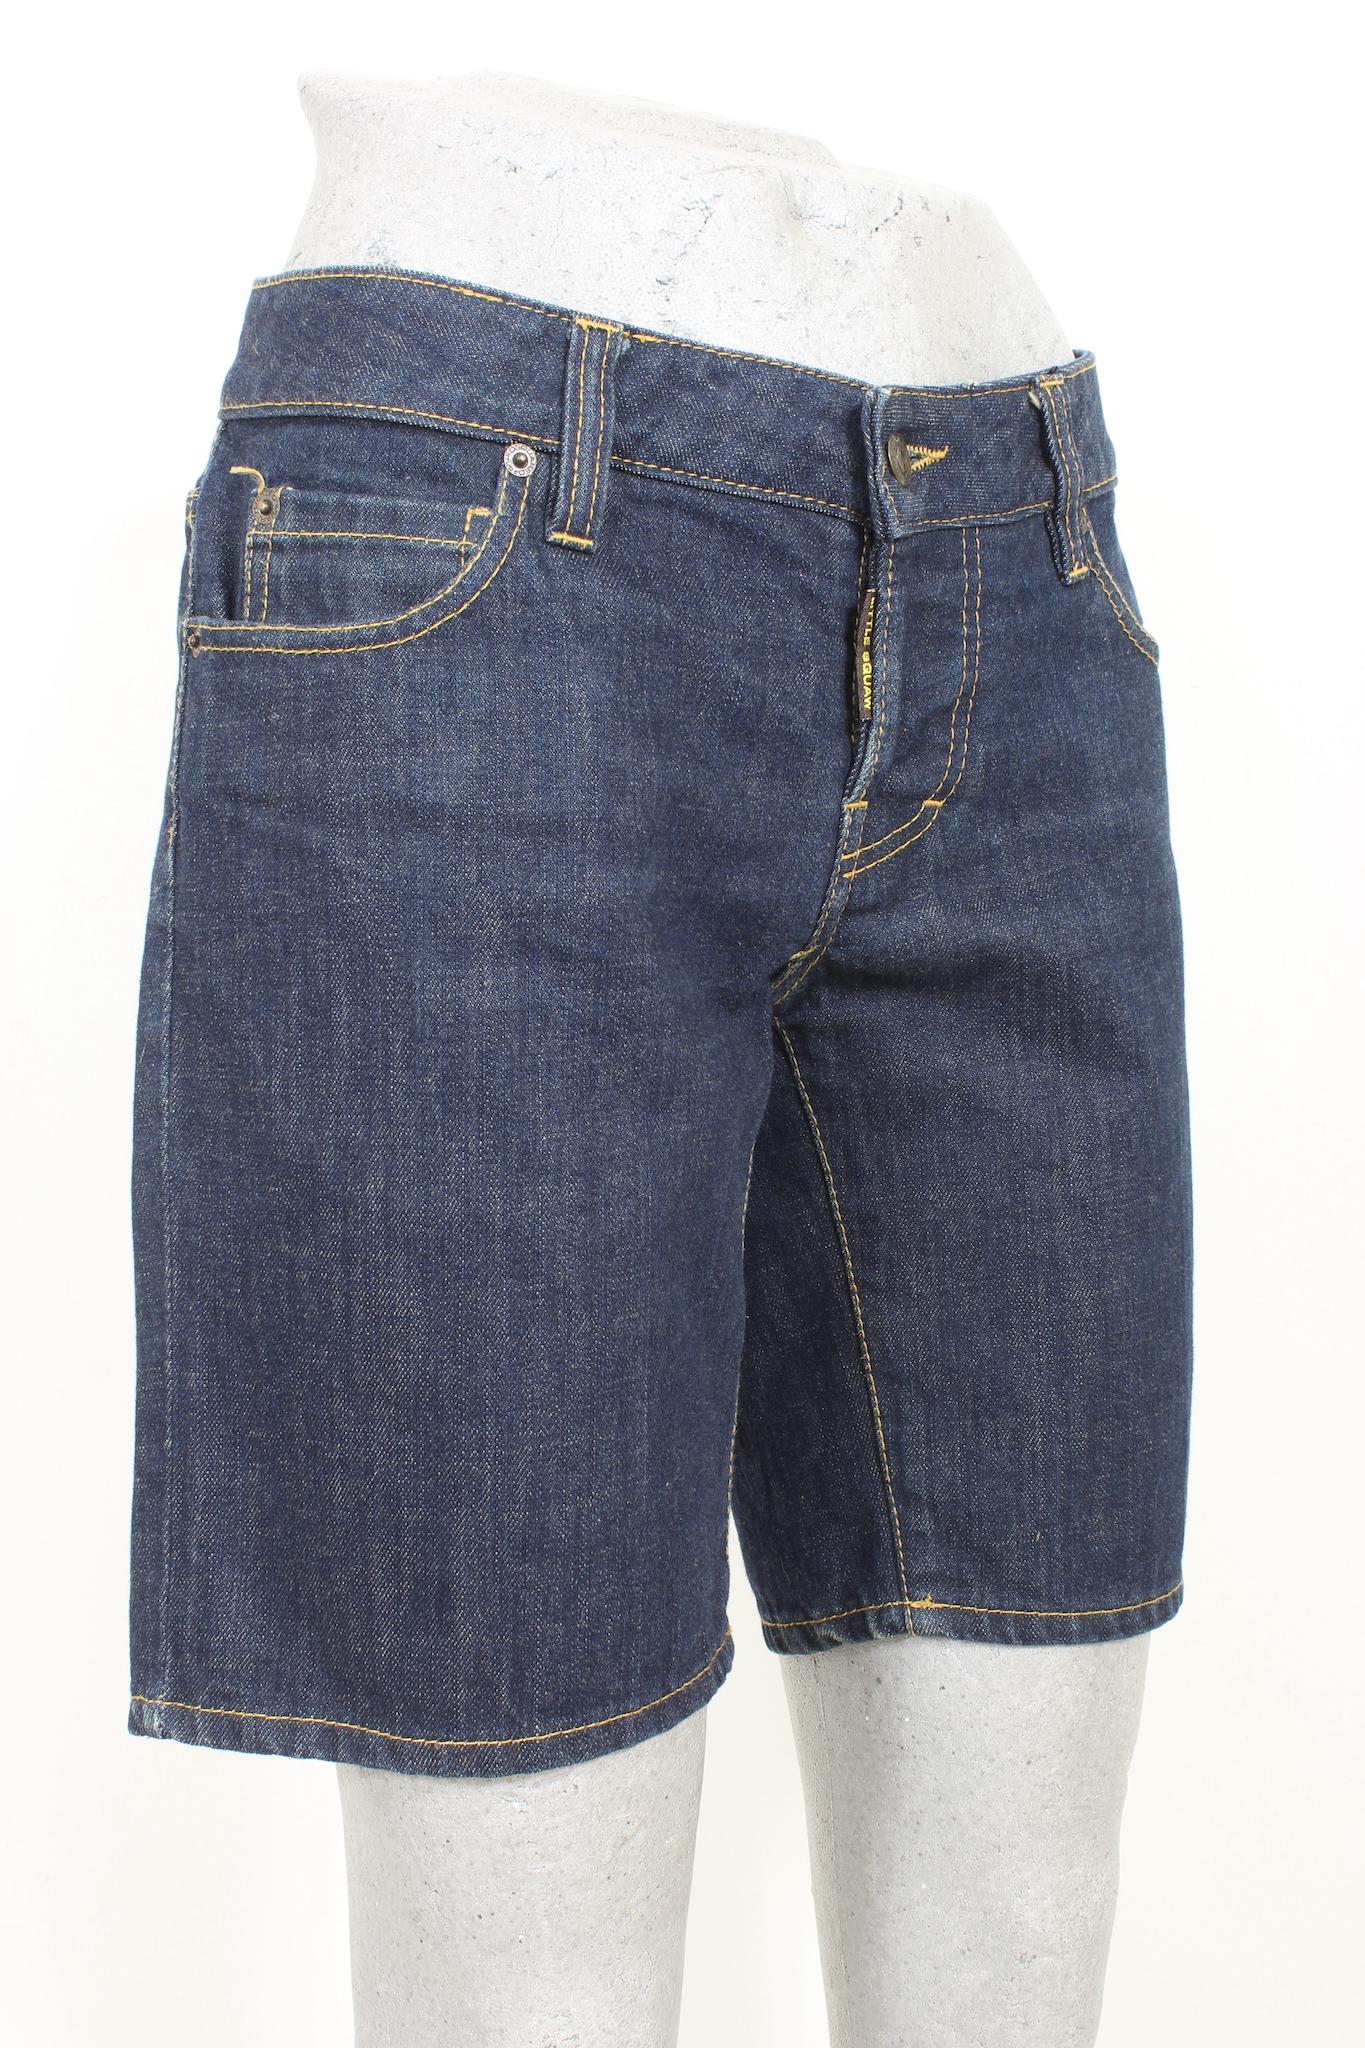 Découvrez un style décontracté avec ce pantalon court en coton bleu de Dsquared datant des années 2000. Fabriqué en 100 % coton dans un délavage moyen, ce jean promet à la fois confort et style. Appréciez les looks denim intemporels avec une touche